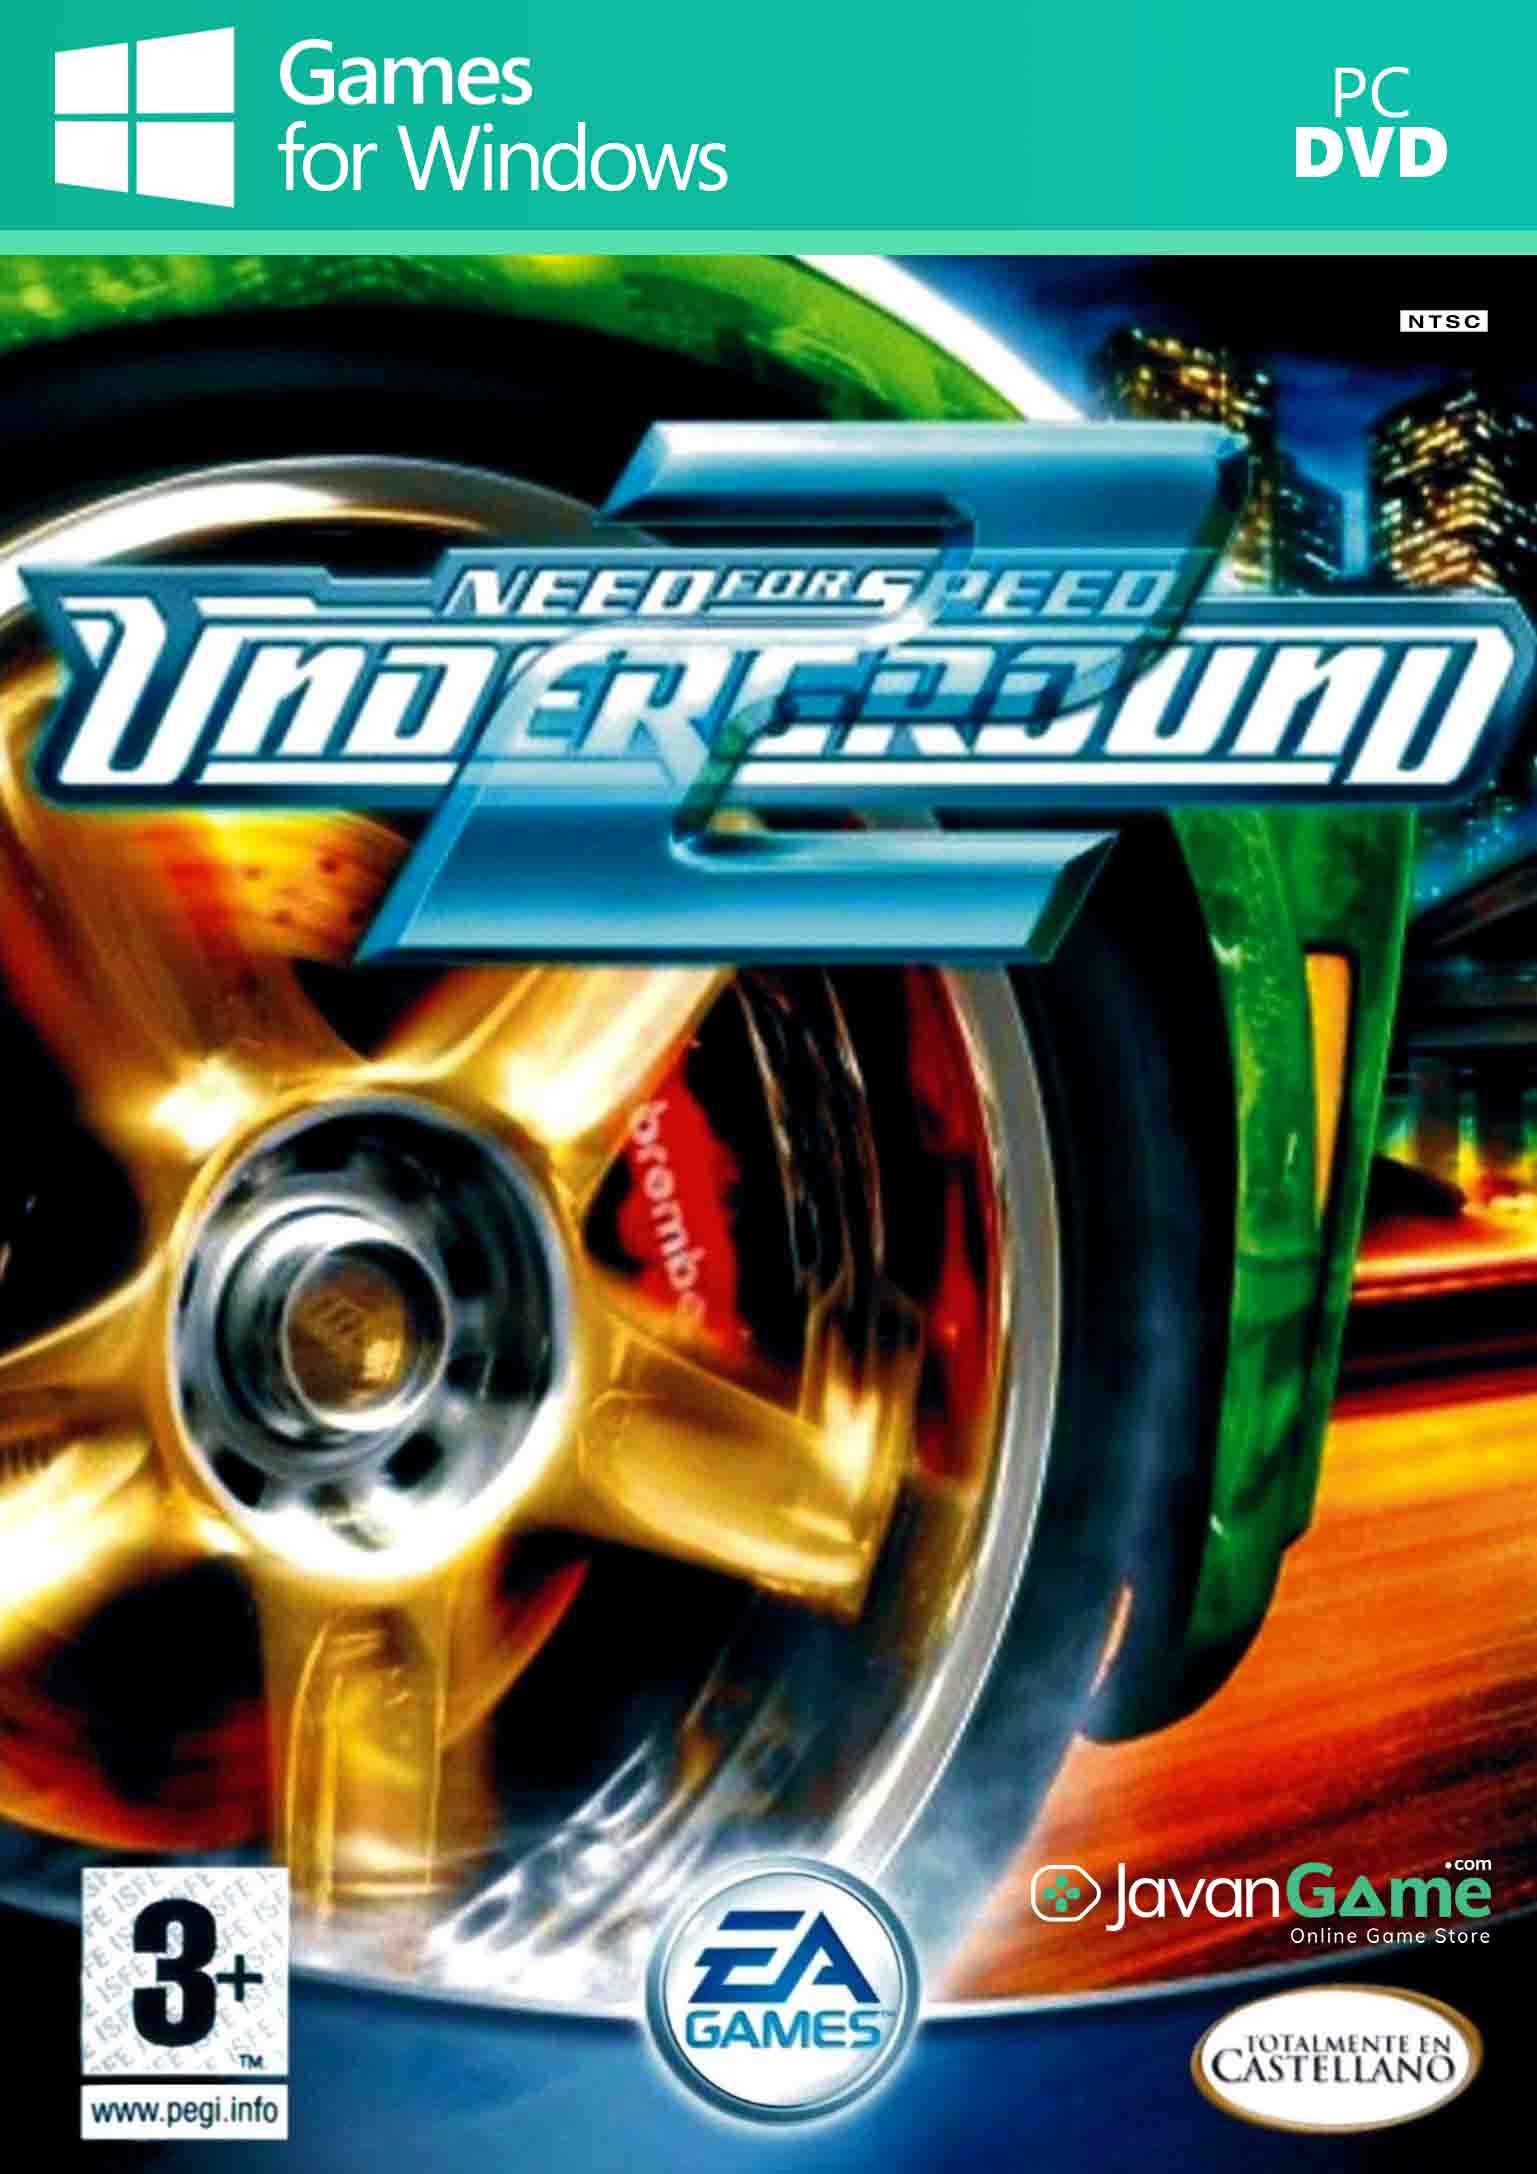 بازی Need for Speed Underground 2 برای PC